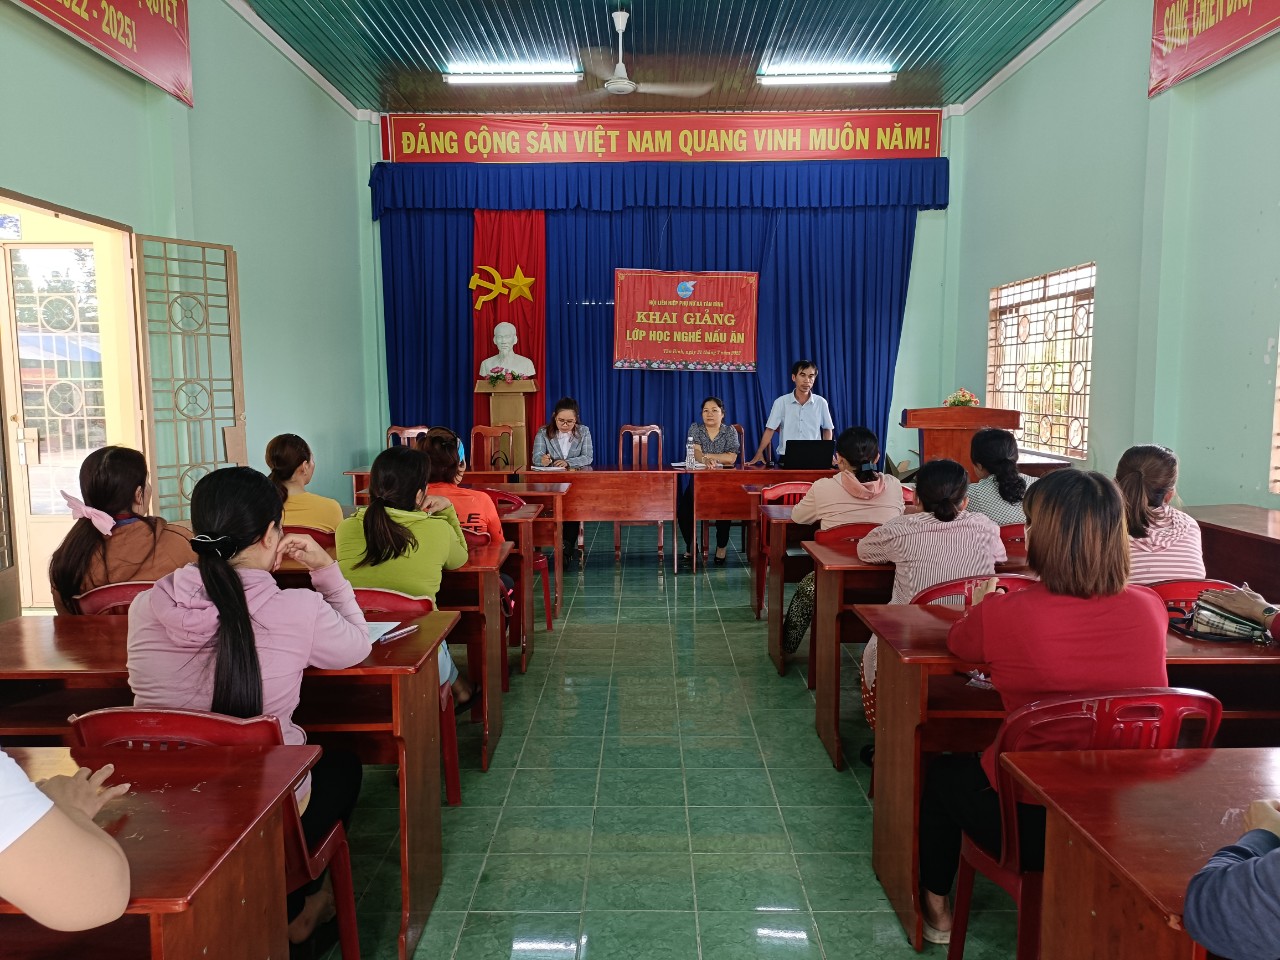 Ảnh: Ông Nguyễn Thành Sơn, Phó Chủ tịch UBND xã Tân Bình  phát biểu khai giảng lớp nghề nấu ăn